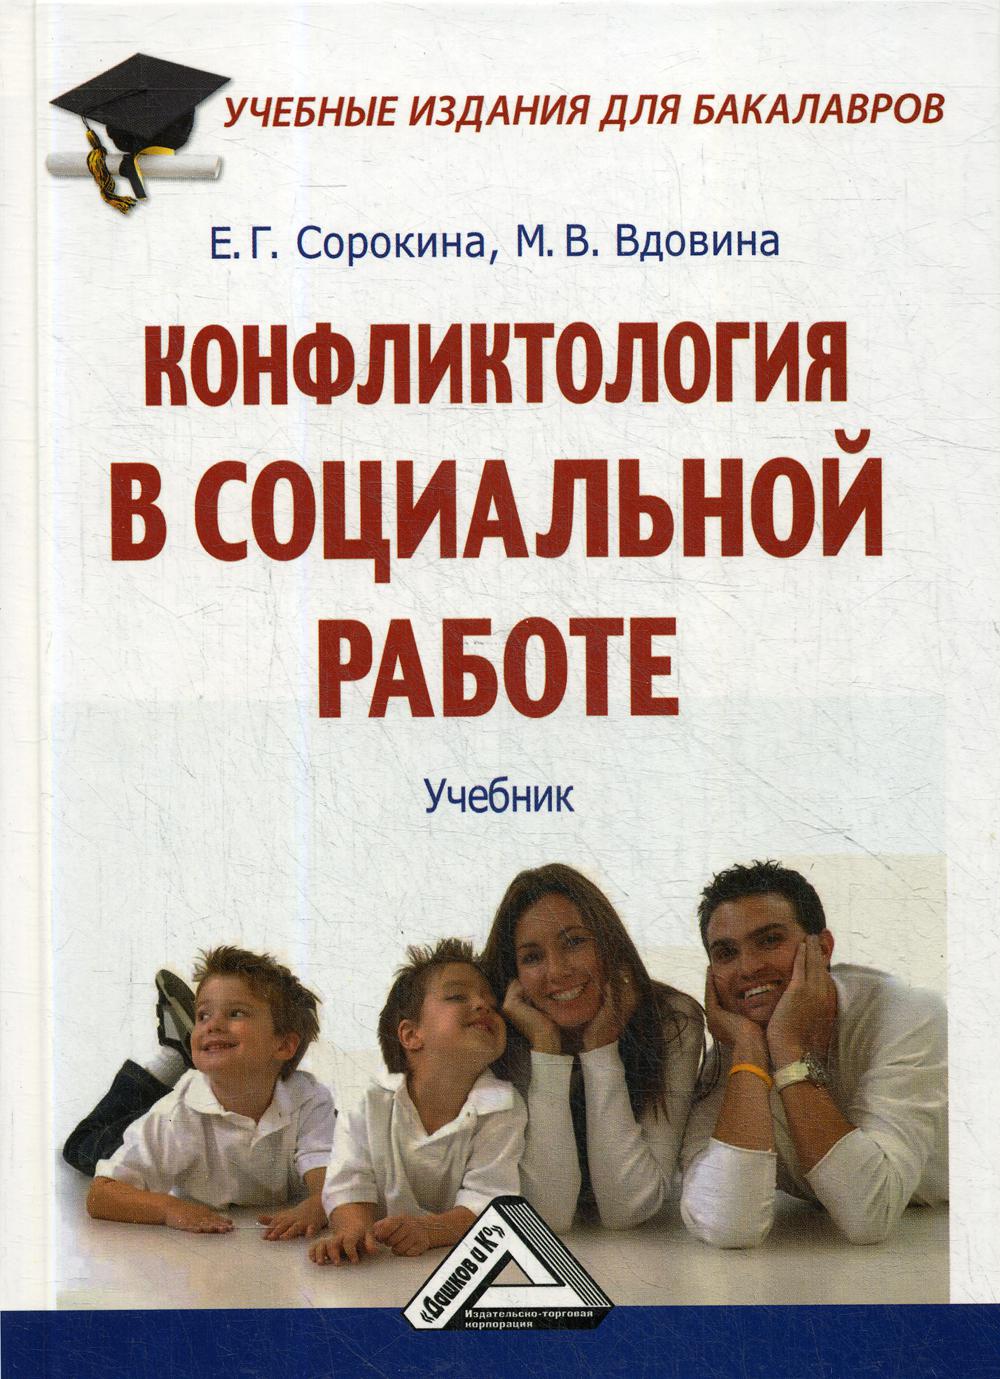 Конфликтология в социальной работе: Учебник для бакалавров. 2-е изд., стер.